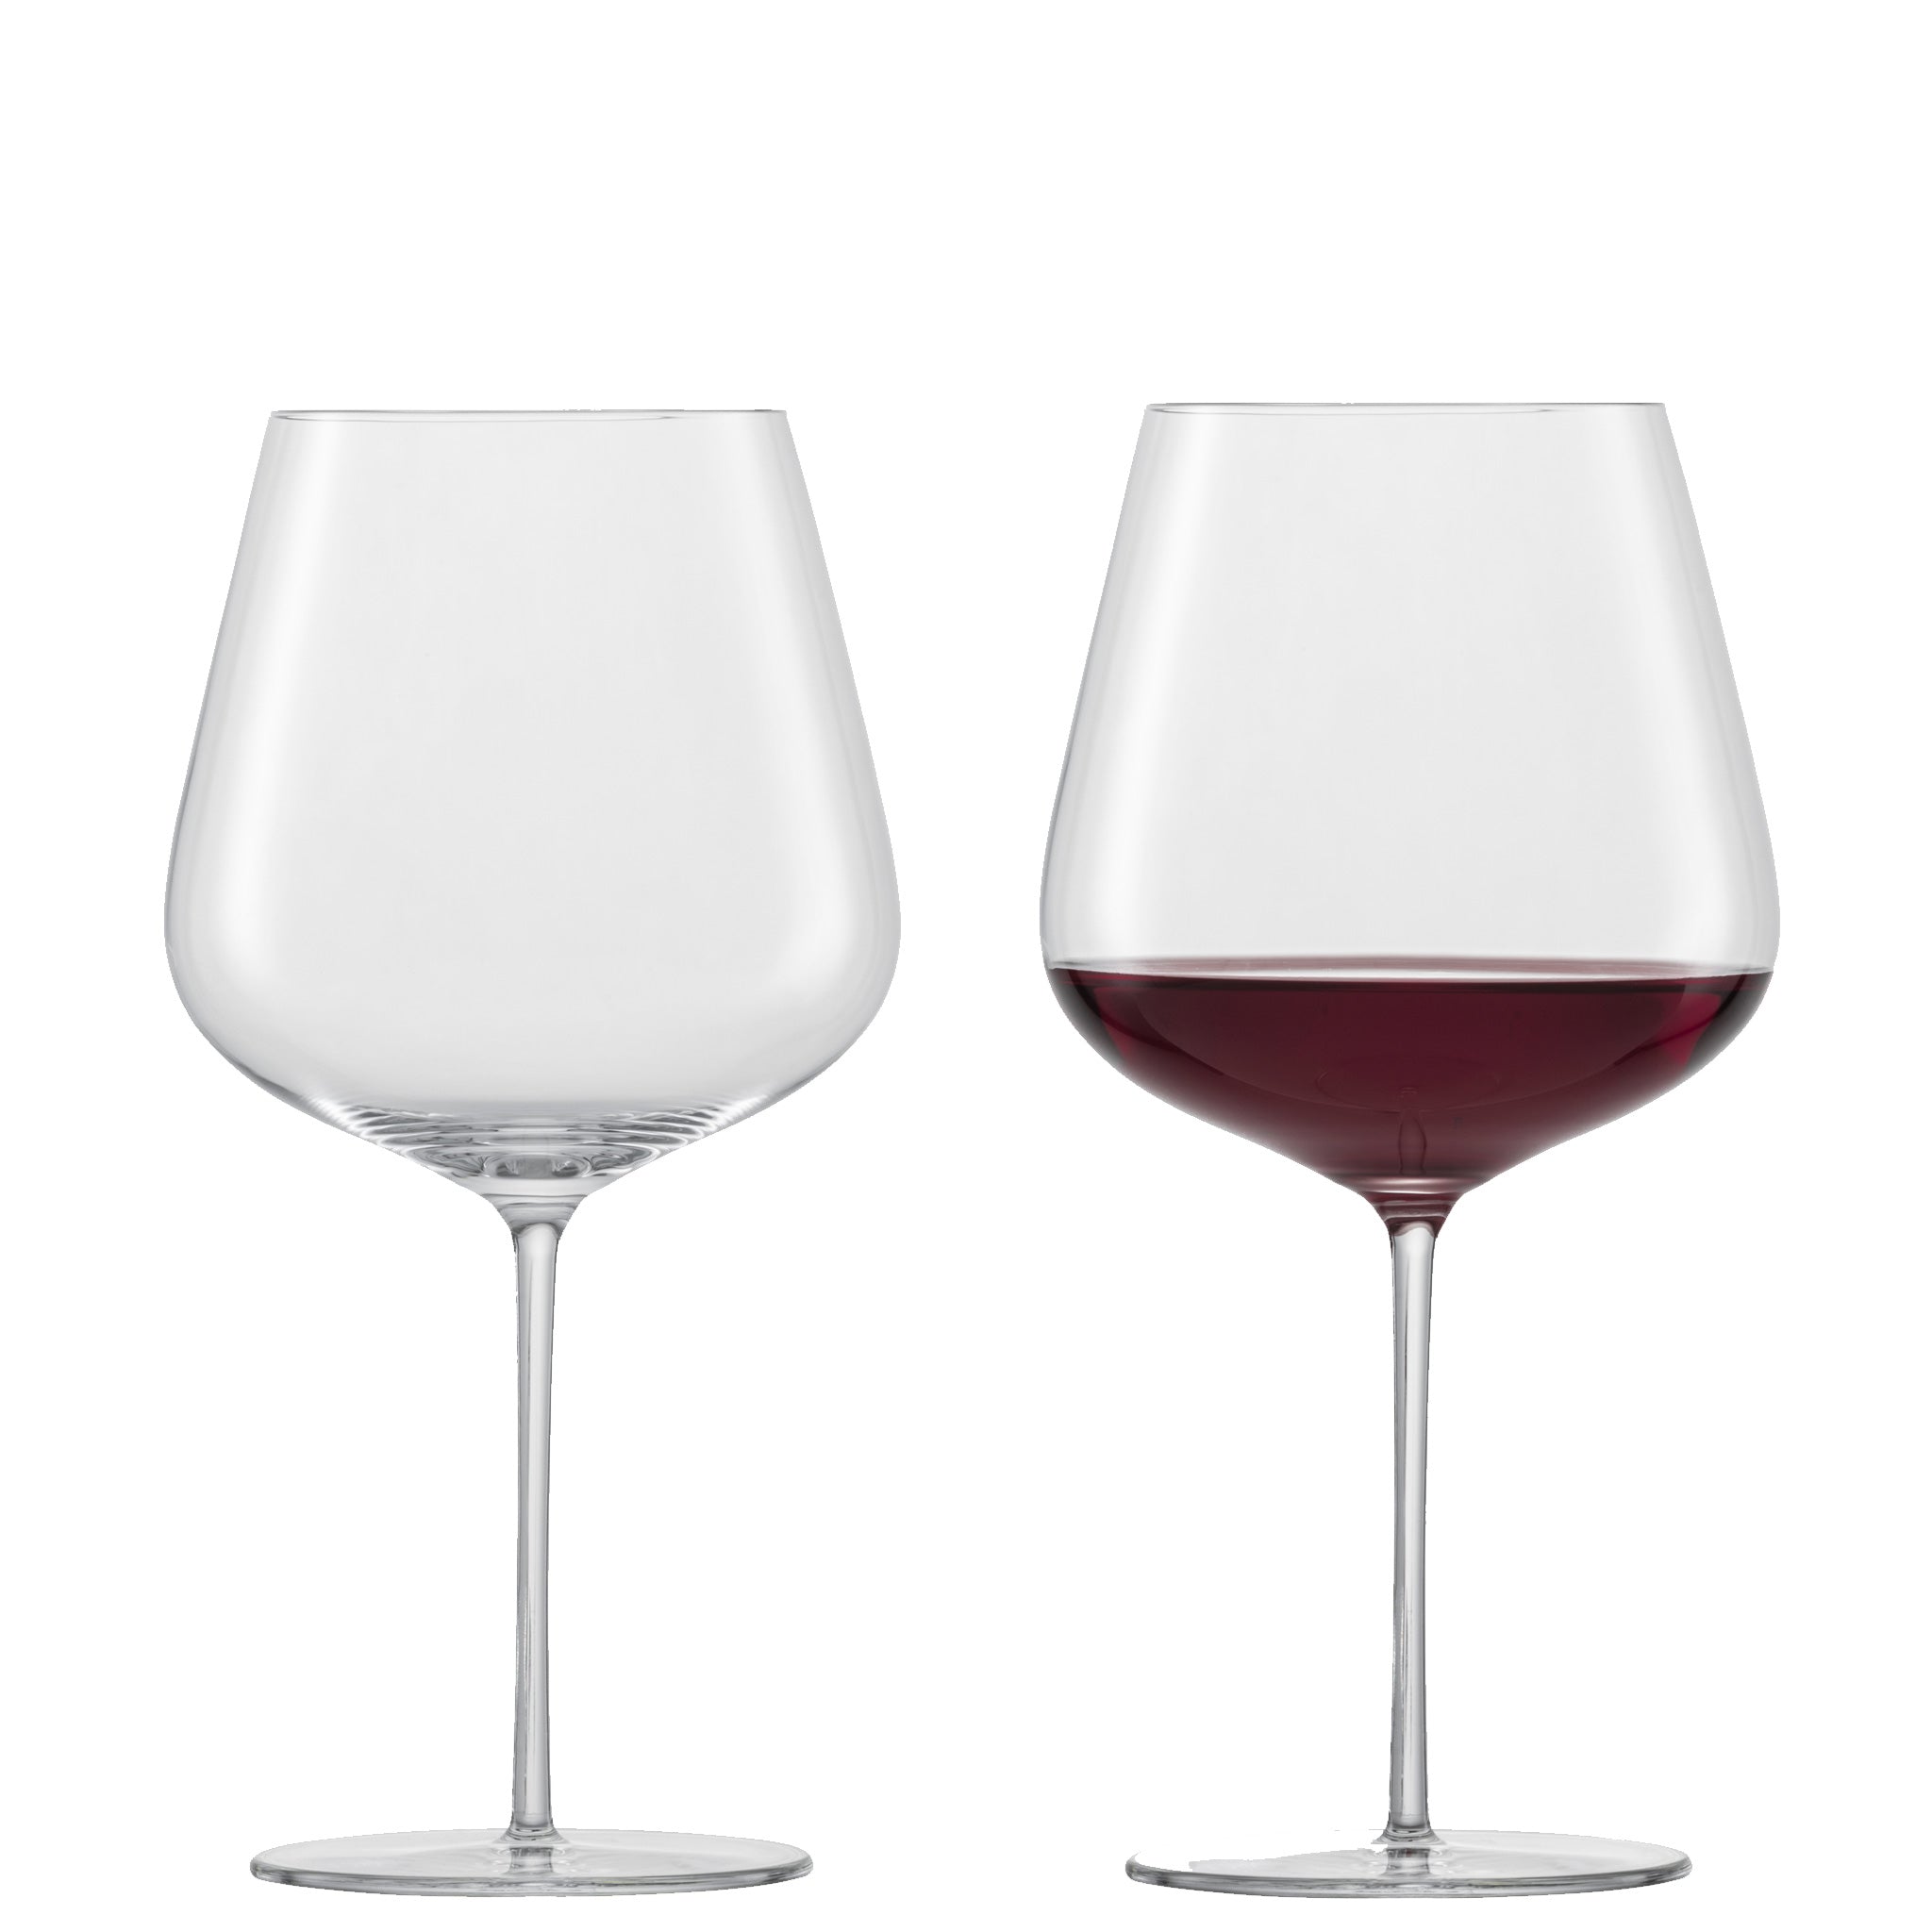 赤ワイン用グラス | ツヴィーゼル公式サイト – ツヴィーゼル・ジャパン